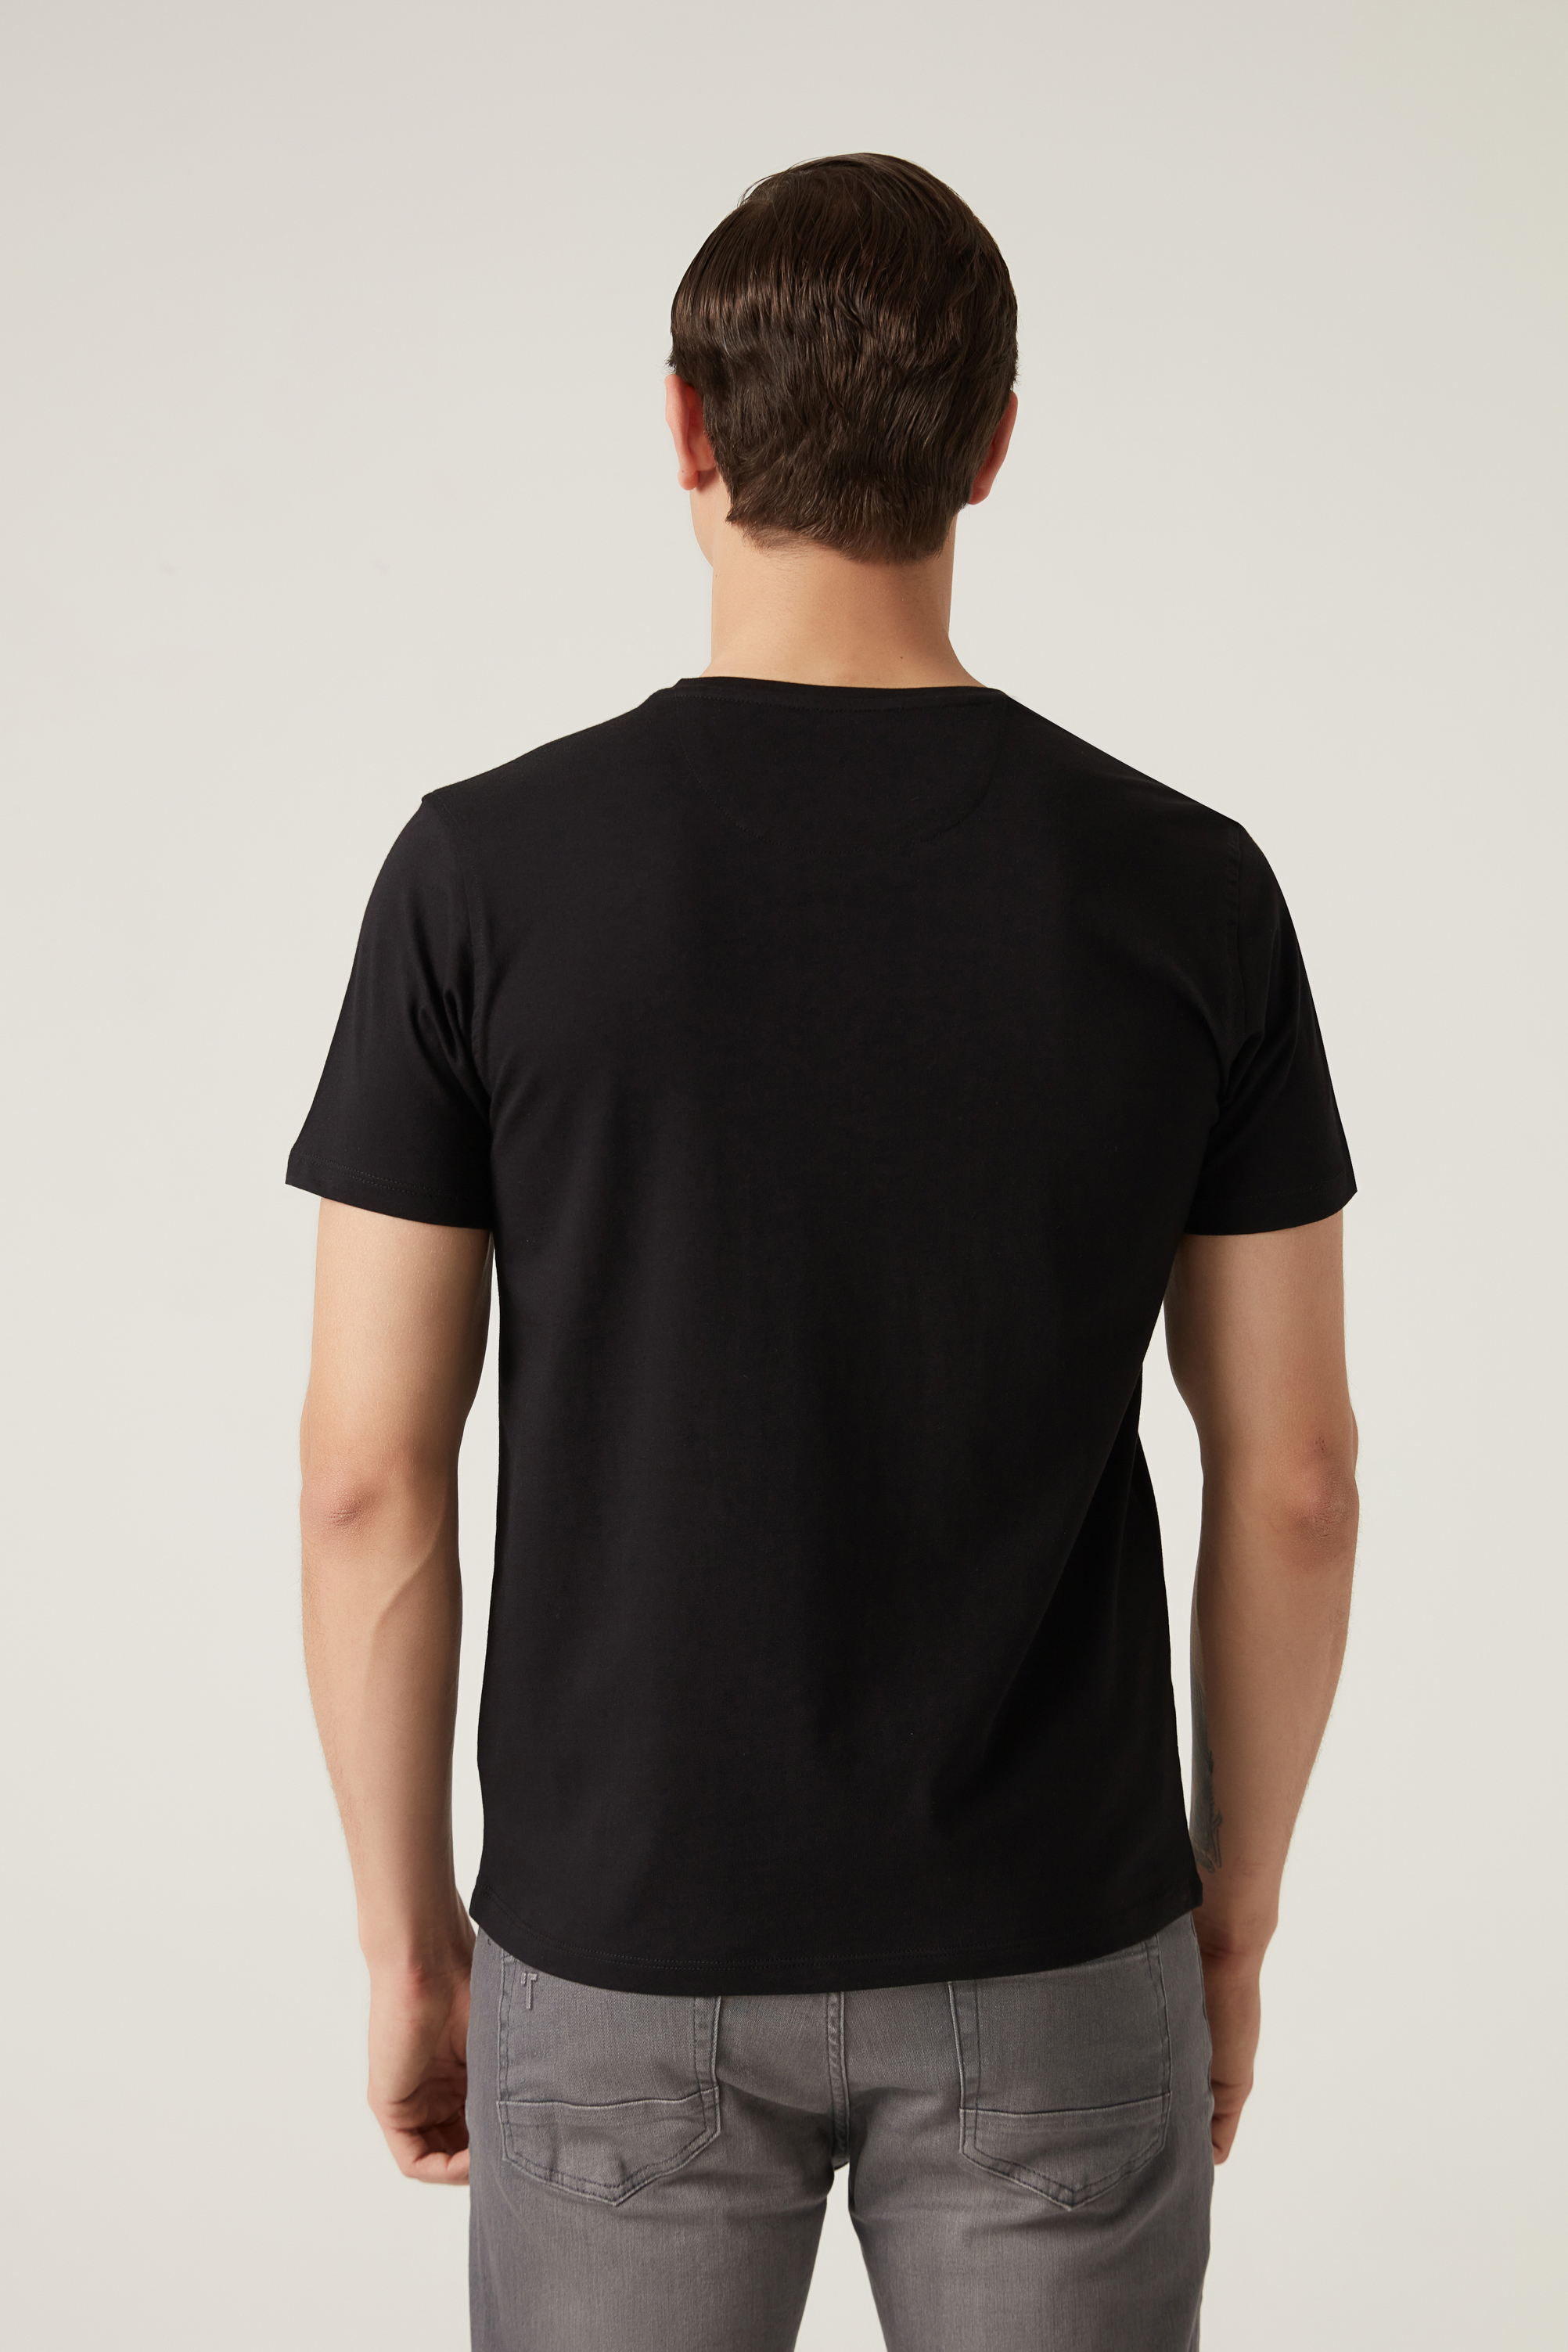 Damat Tween Damat Siyah T-shirt. 4